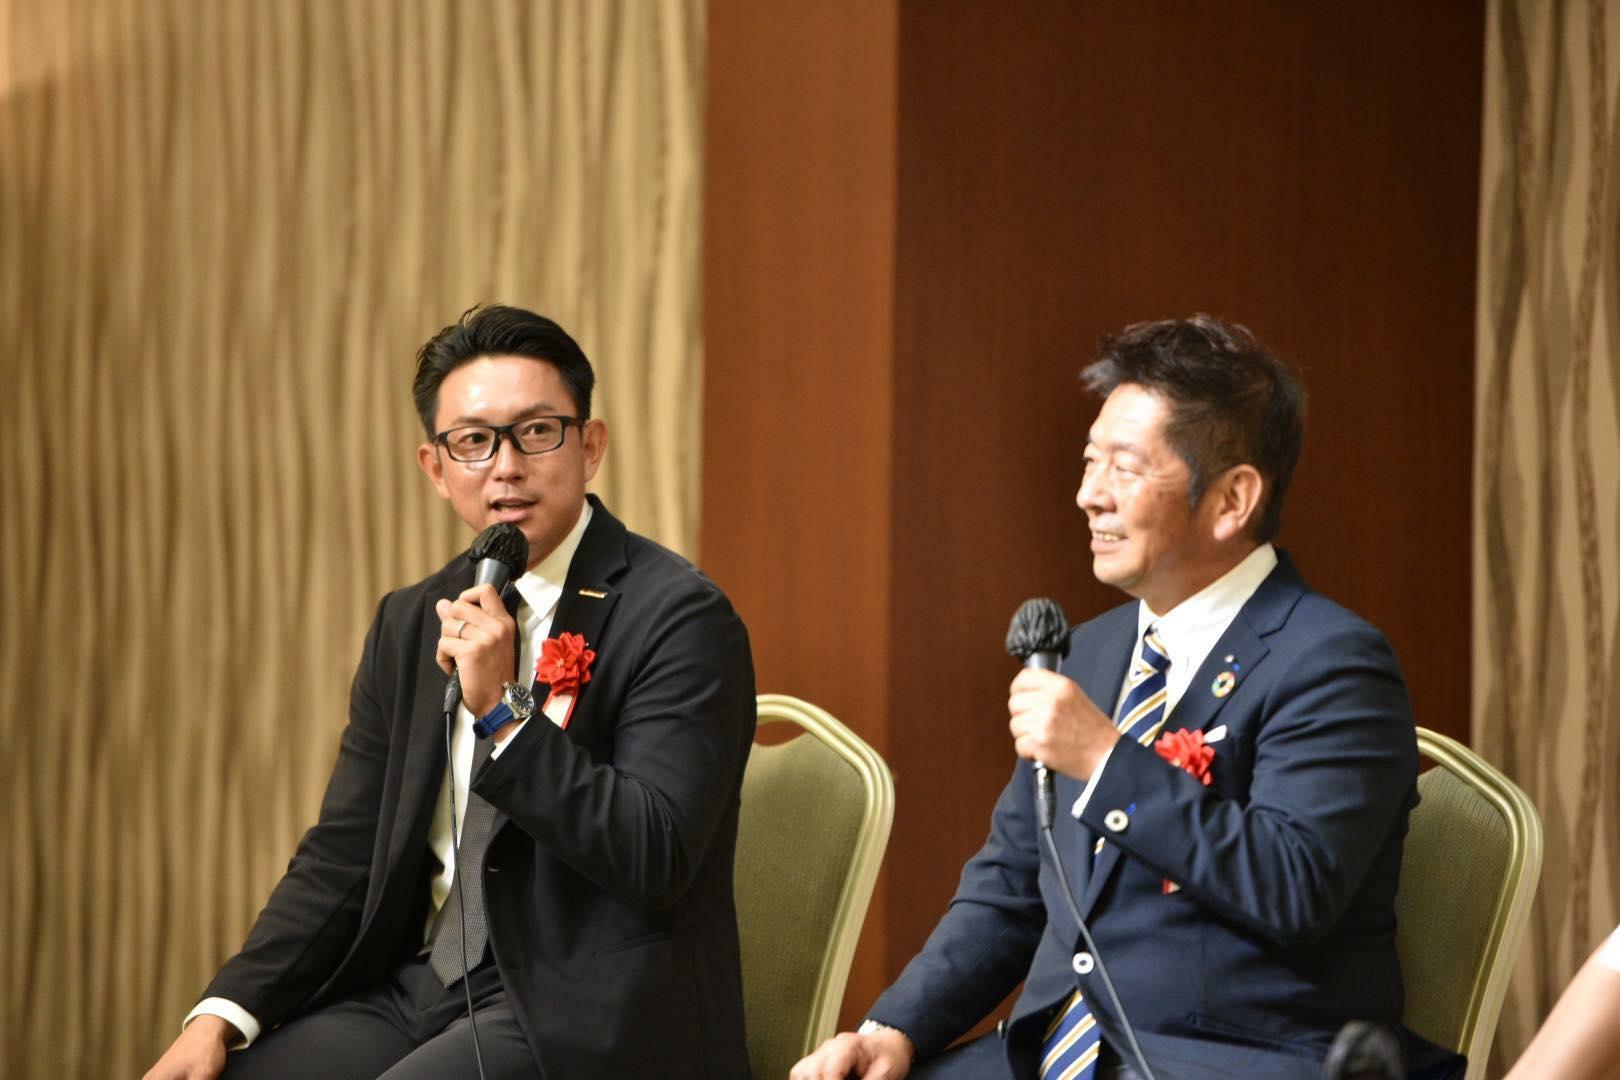 川﨑宗則氏と親交の深い中田氏。出版記念イベントでは川崎氏の軽妙なトークが会場を盛り上げた。